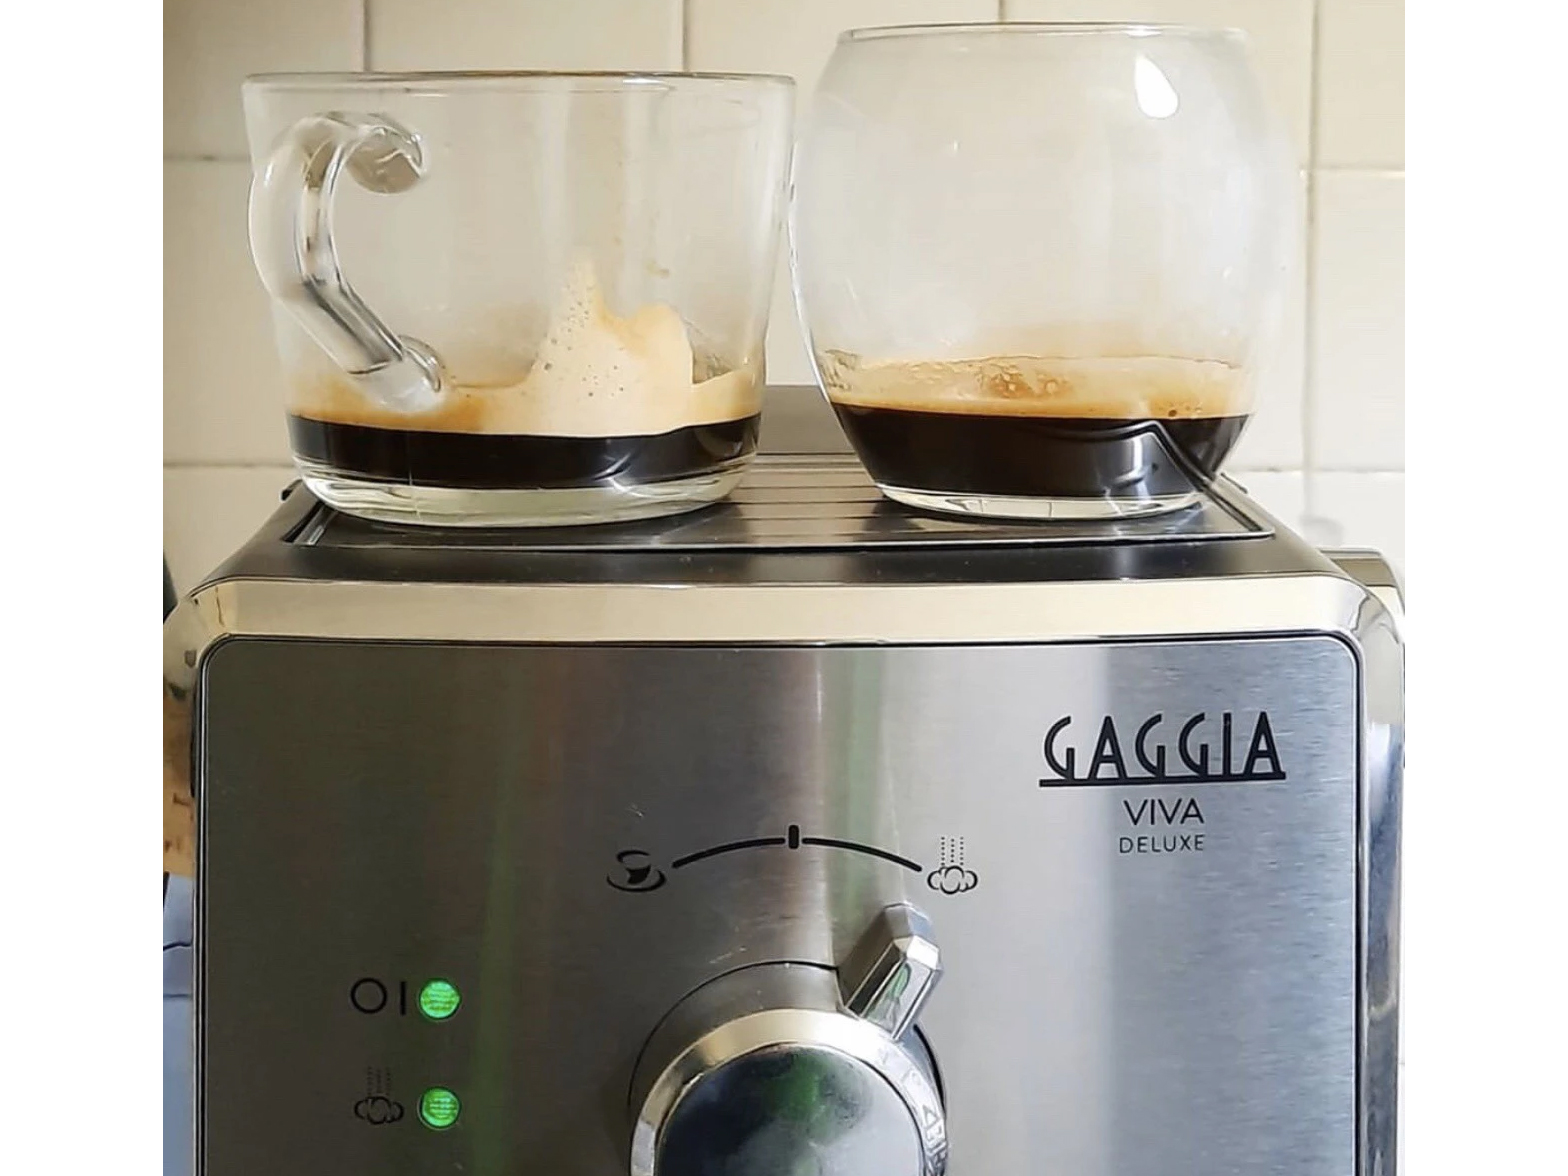 Máy pha cà phê Gaggia Viva Deluxe